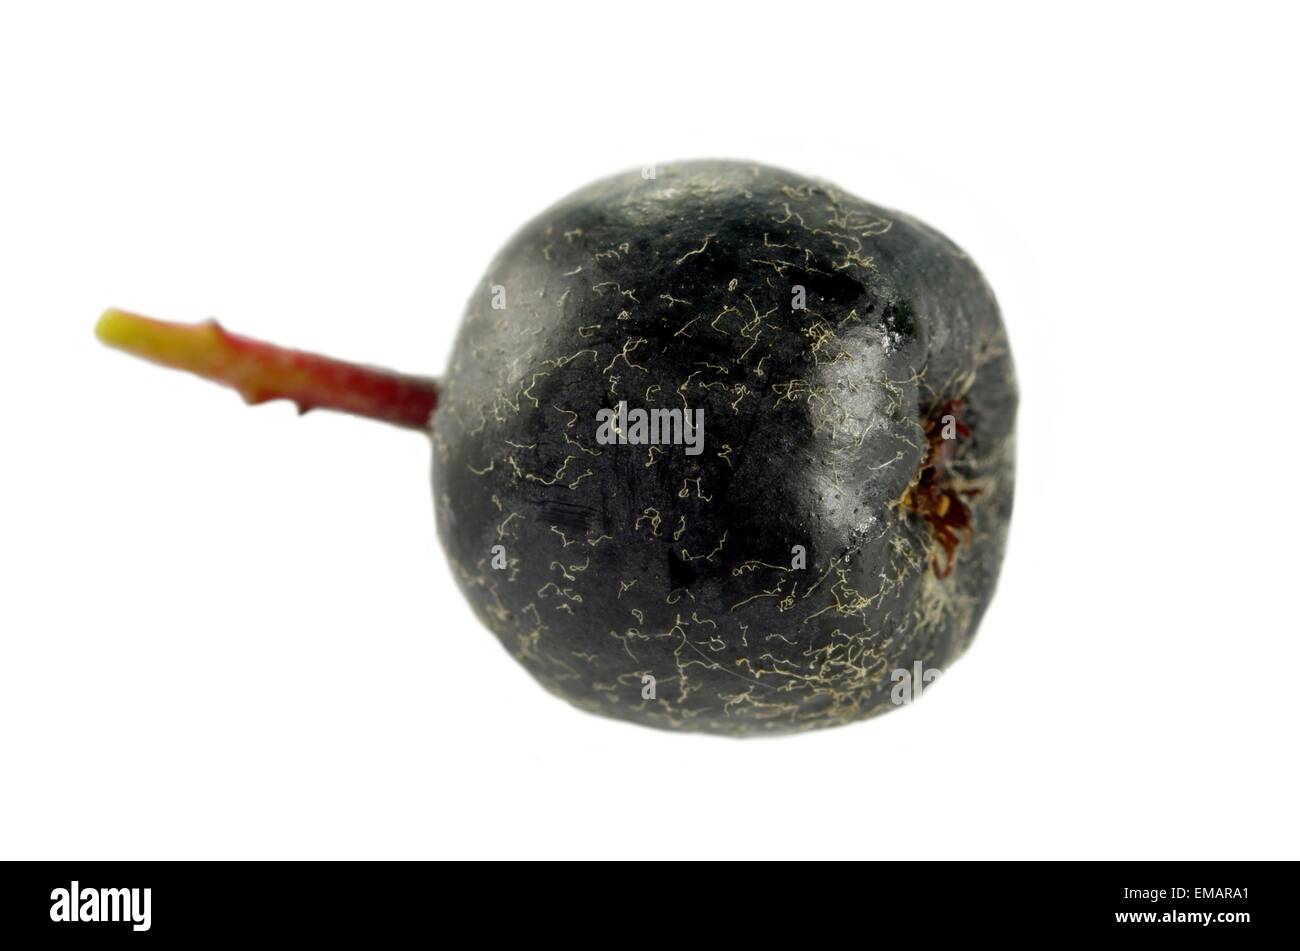 black berry aronia on a white background Stock Photo